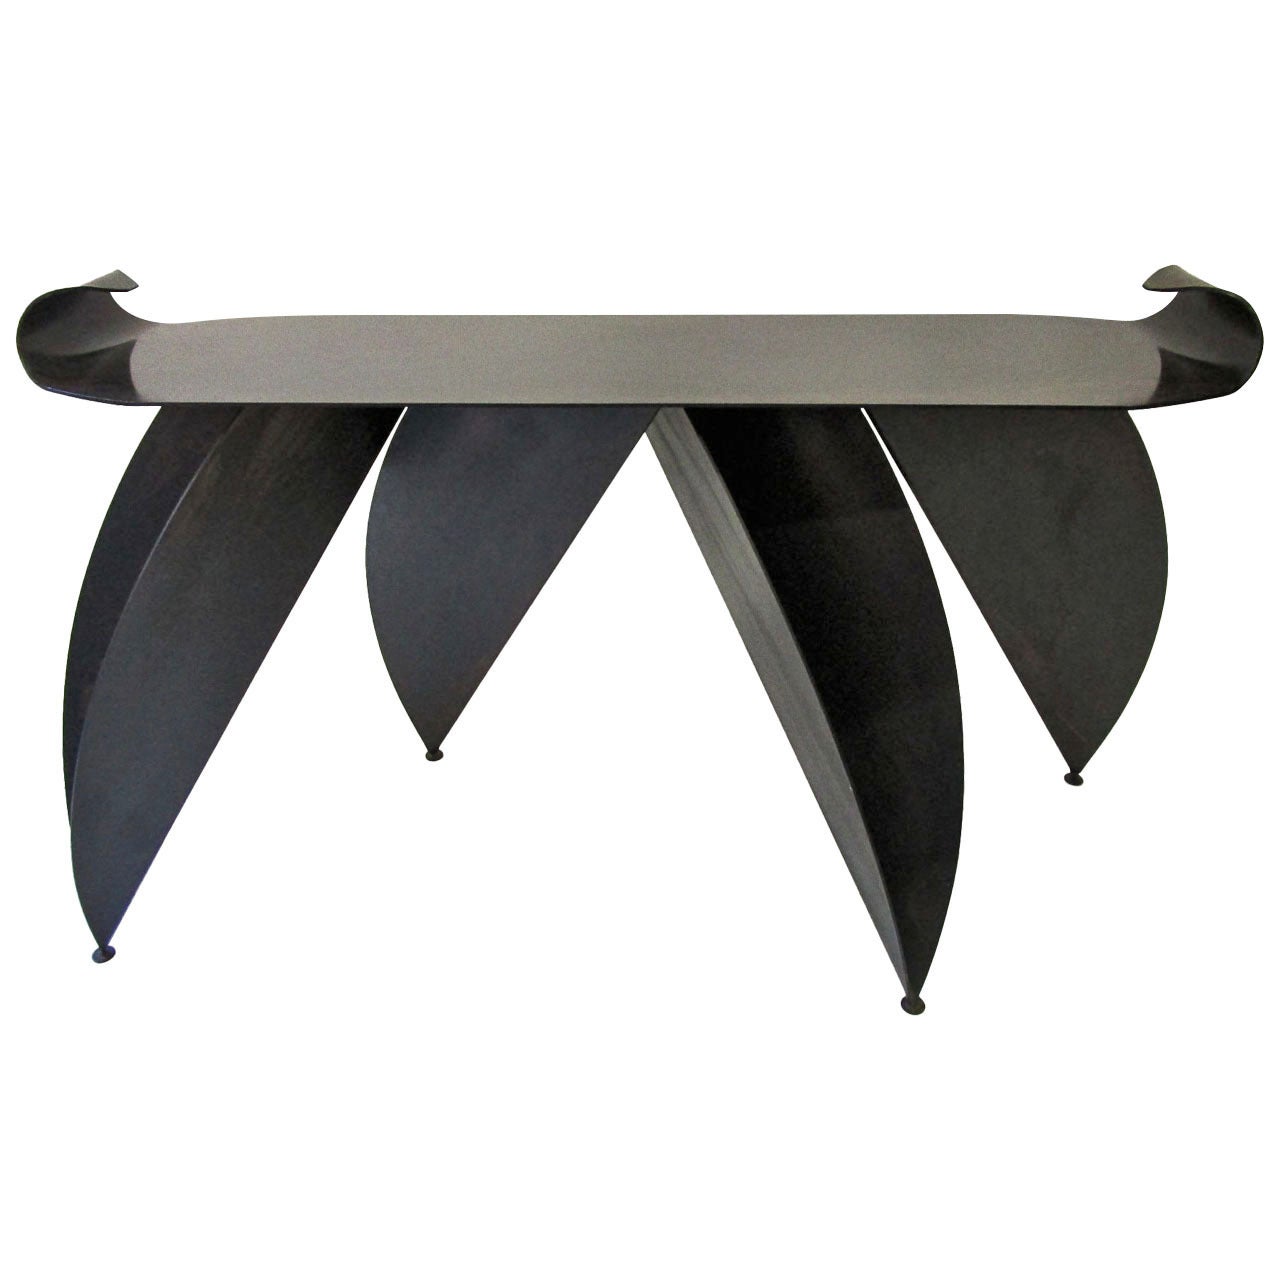 Impressive and Unique Steel Console Table